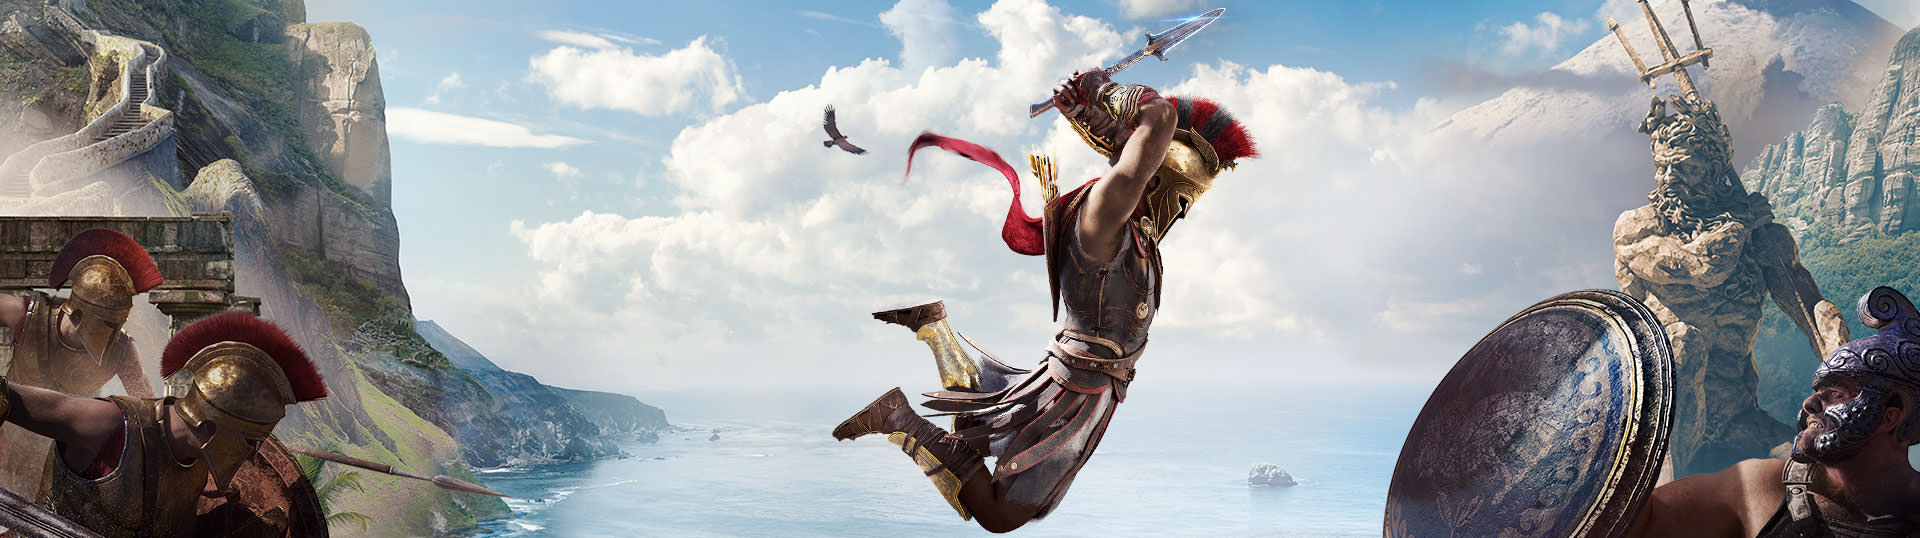 Ассасин крид одиссея от механиков. Assassins Creed Одиссея Gold Edition. Assassin's Creed Odyssey Gold Edition ps4. Архидам Assassins Creed Odyssey. Assassin's Creed Odyssey Spartan Edition.